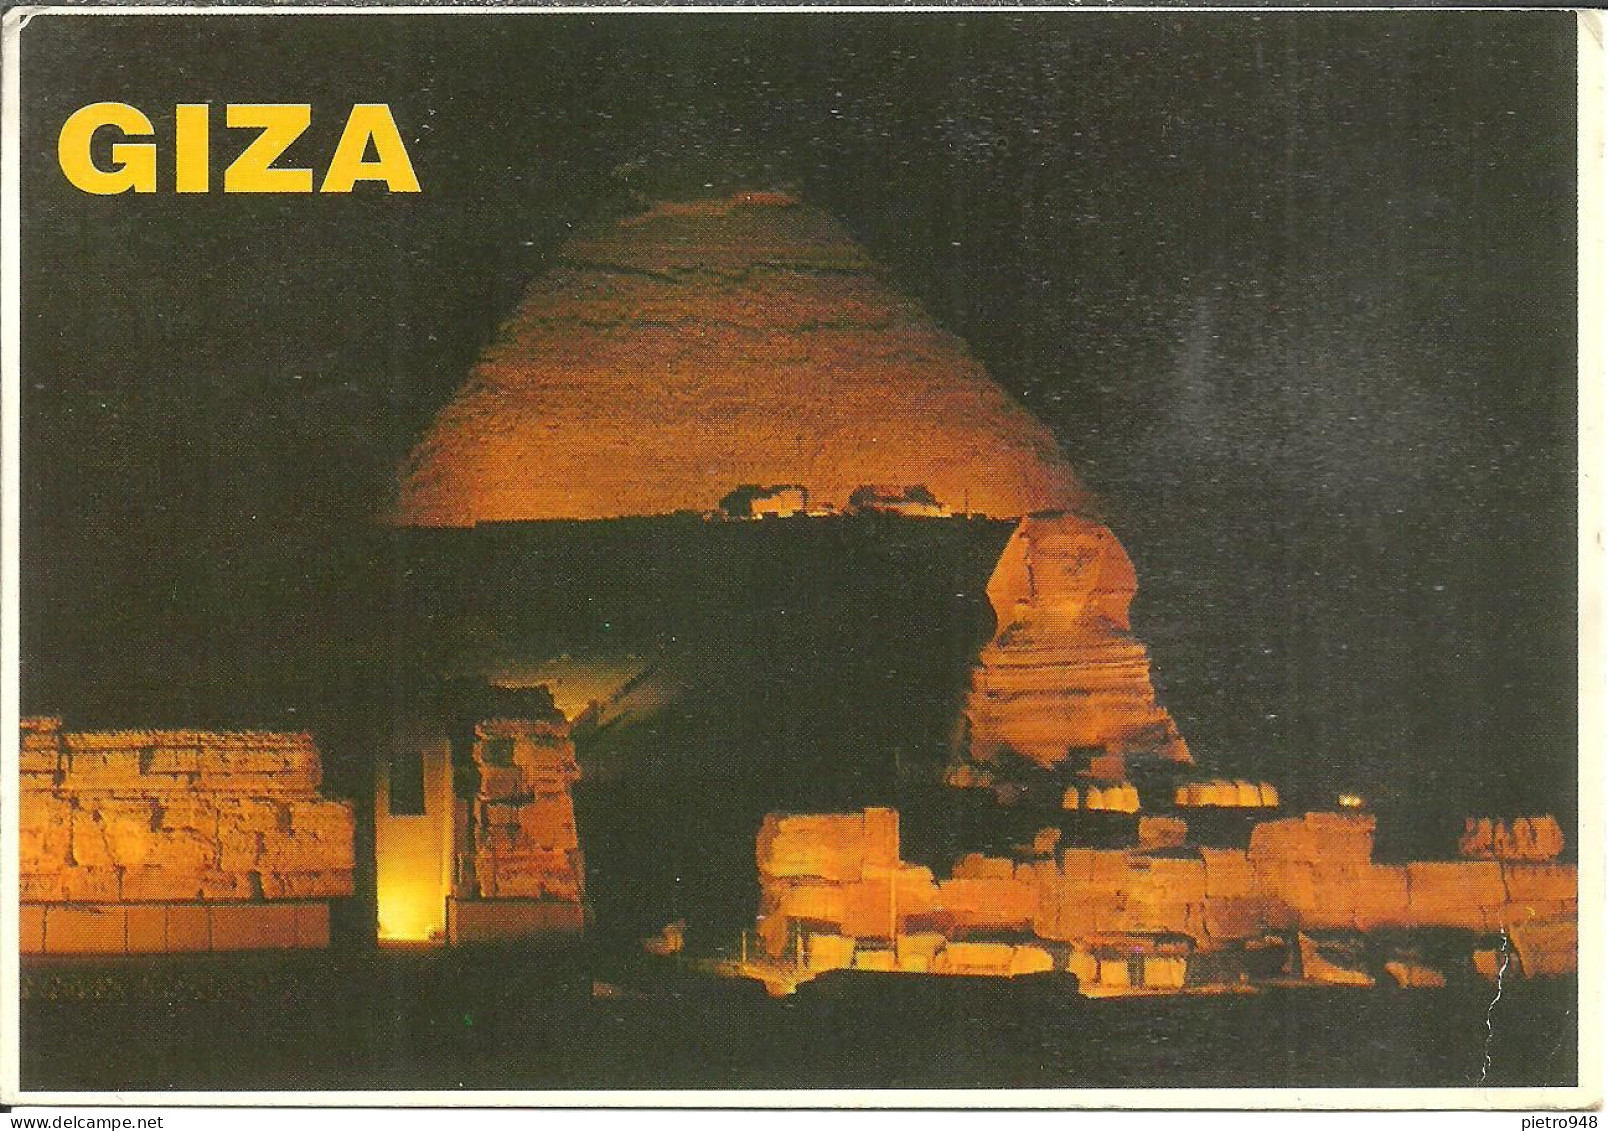 Giza (Egitto, Egypt) The Great Sphinx And Pyramids By Night, Sfinge E Piramidi, Notturno, La Nuit - Sphinx